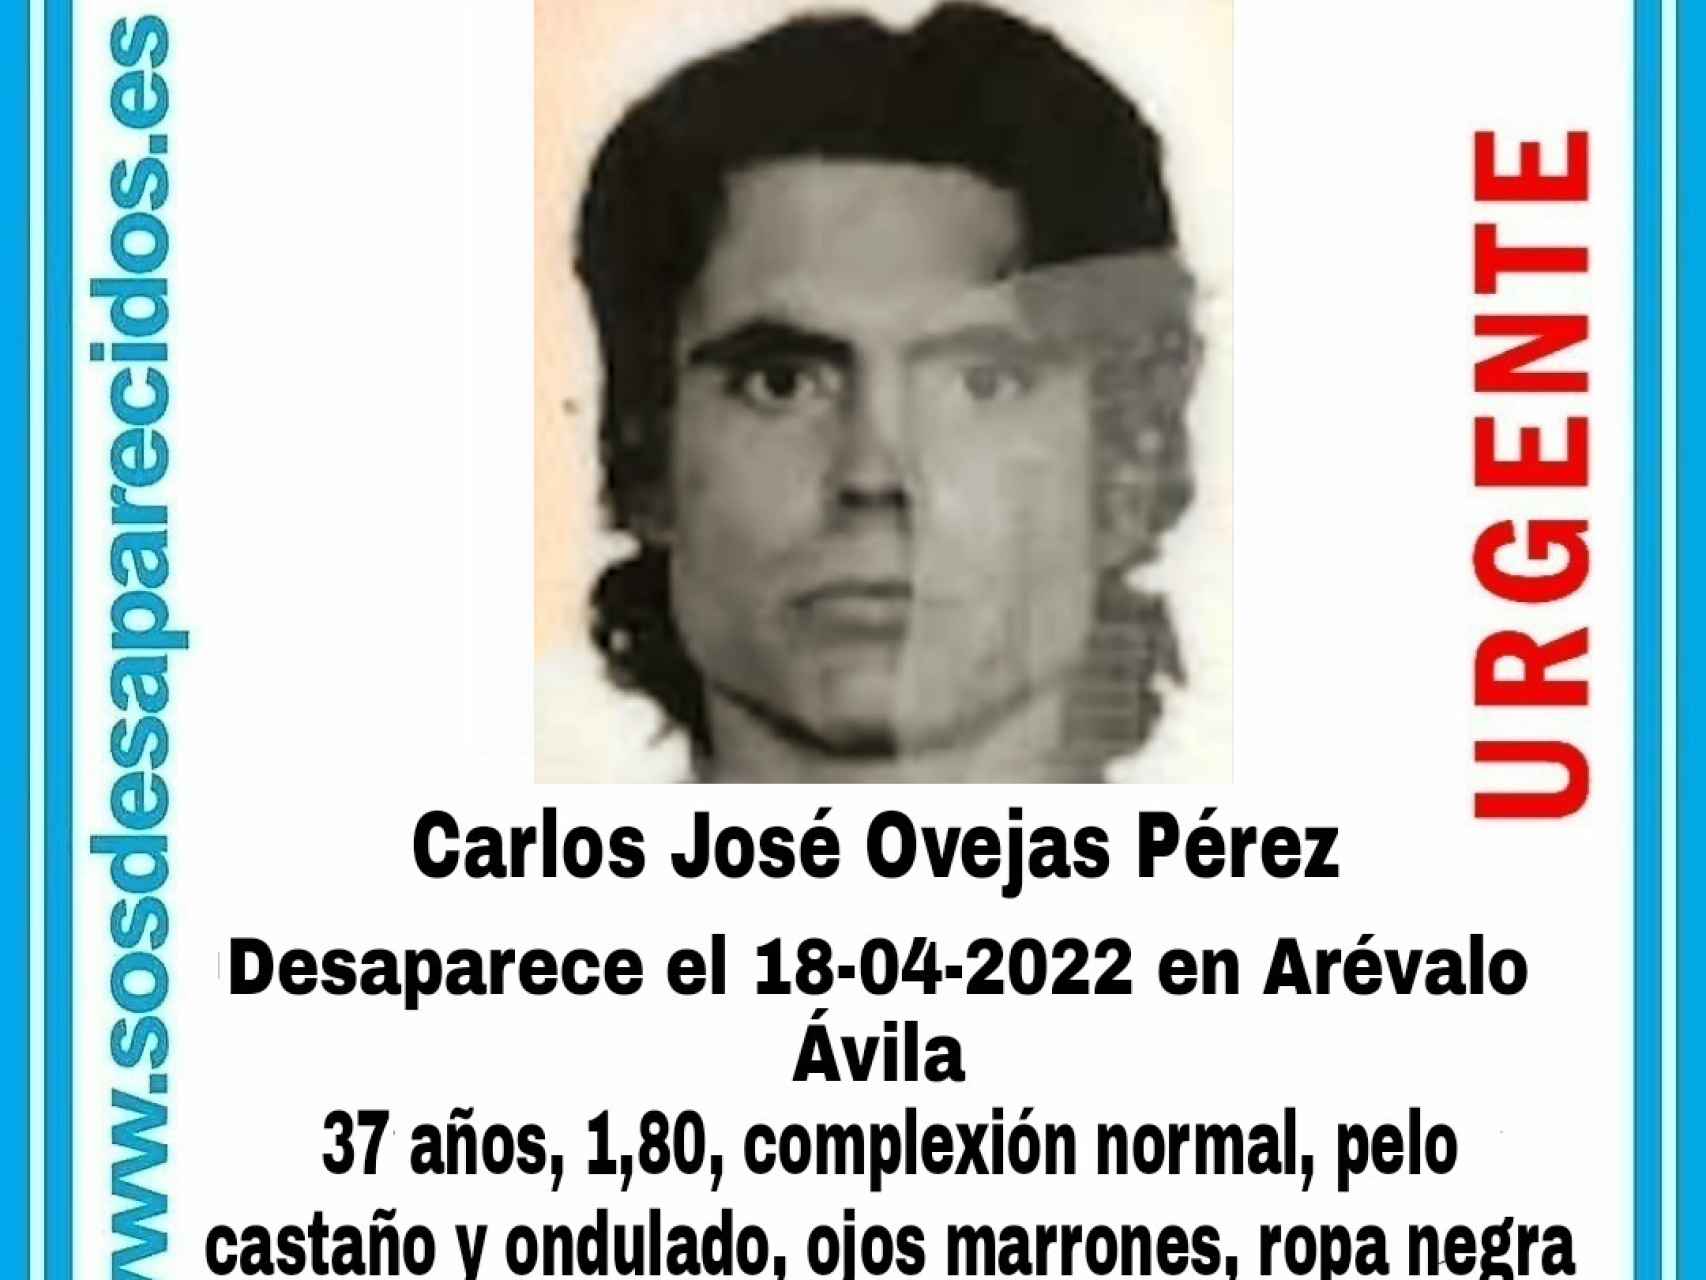 Desaparece un hombre en Arévalo, según ha informado SOS Desaparecidos